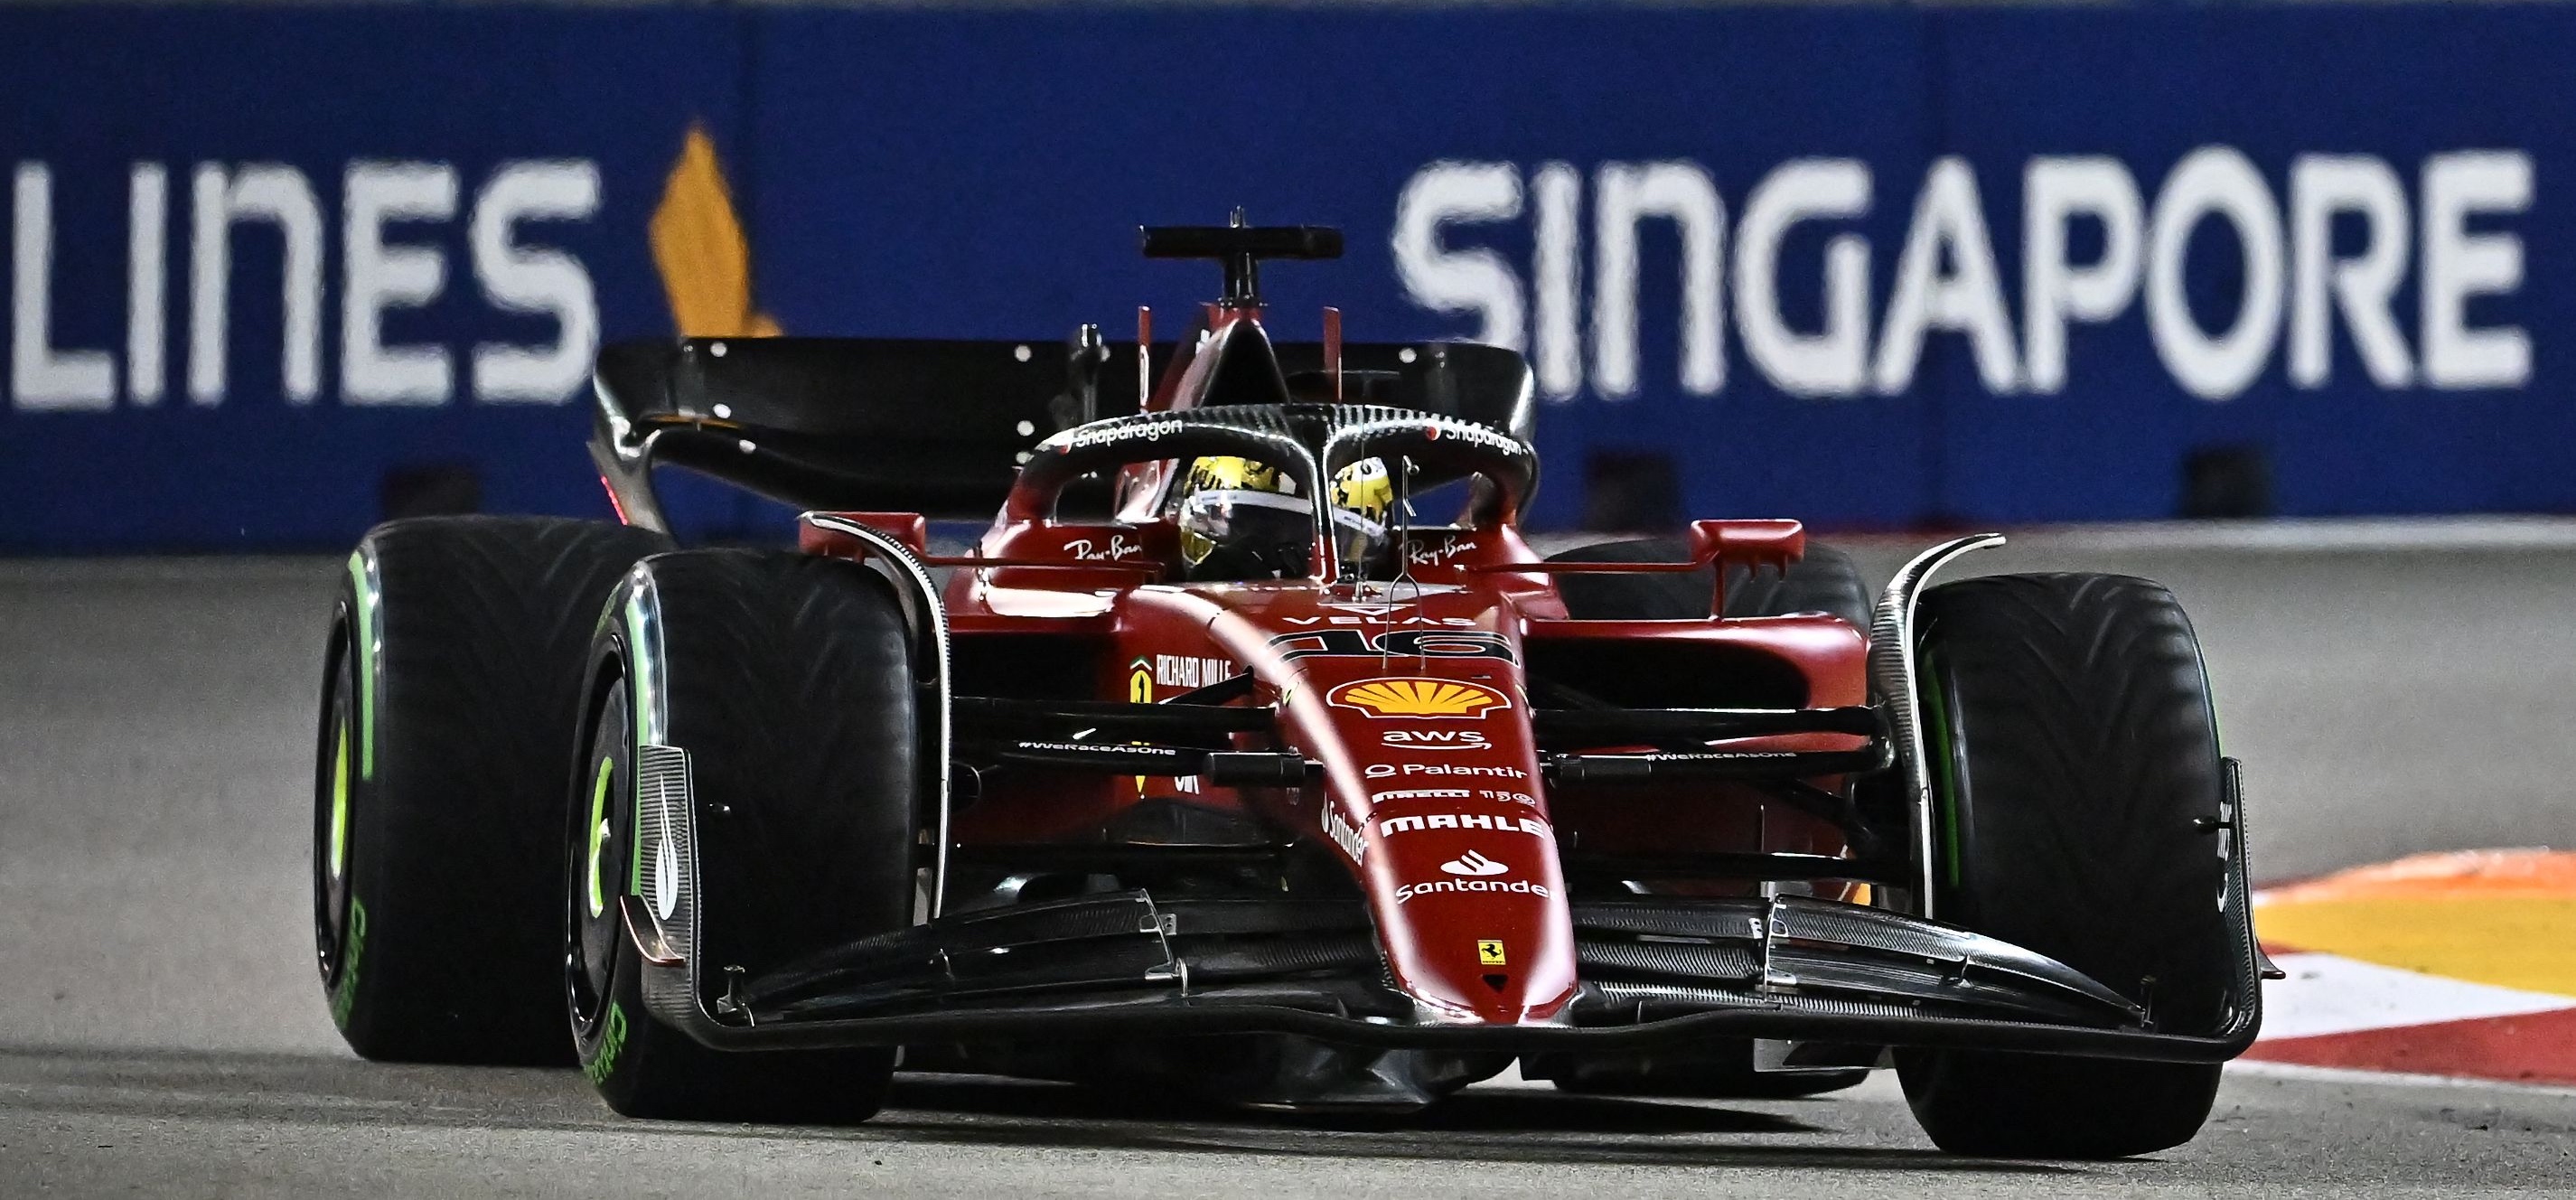 GP Singapura: Charles Leclerc Raih Pole Position, Max Verstappen di Posisi Kedelapan